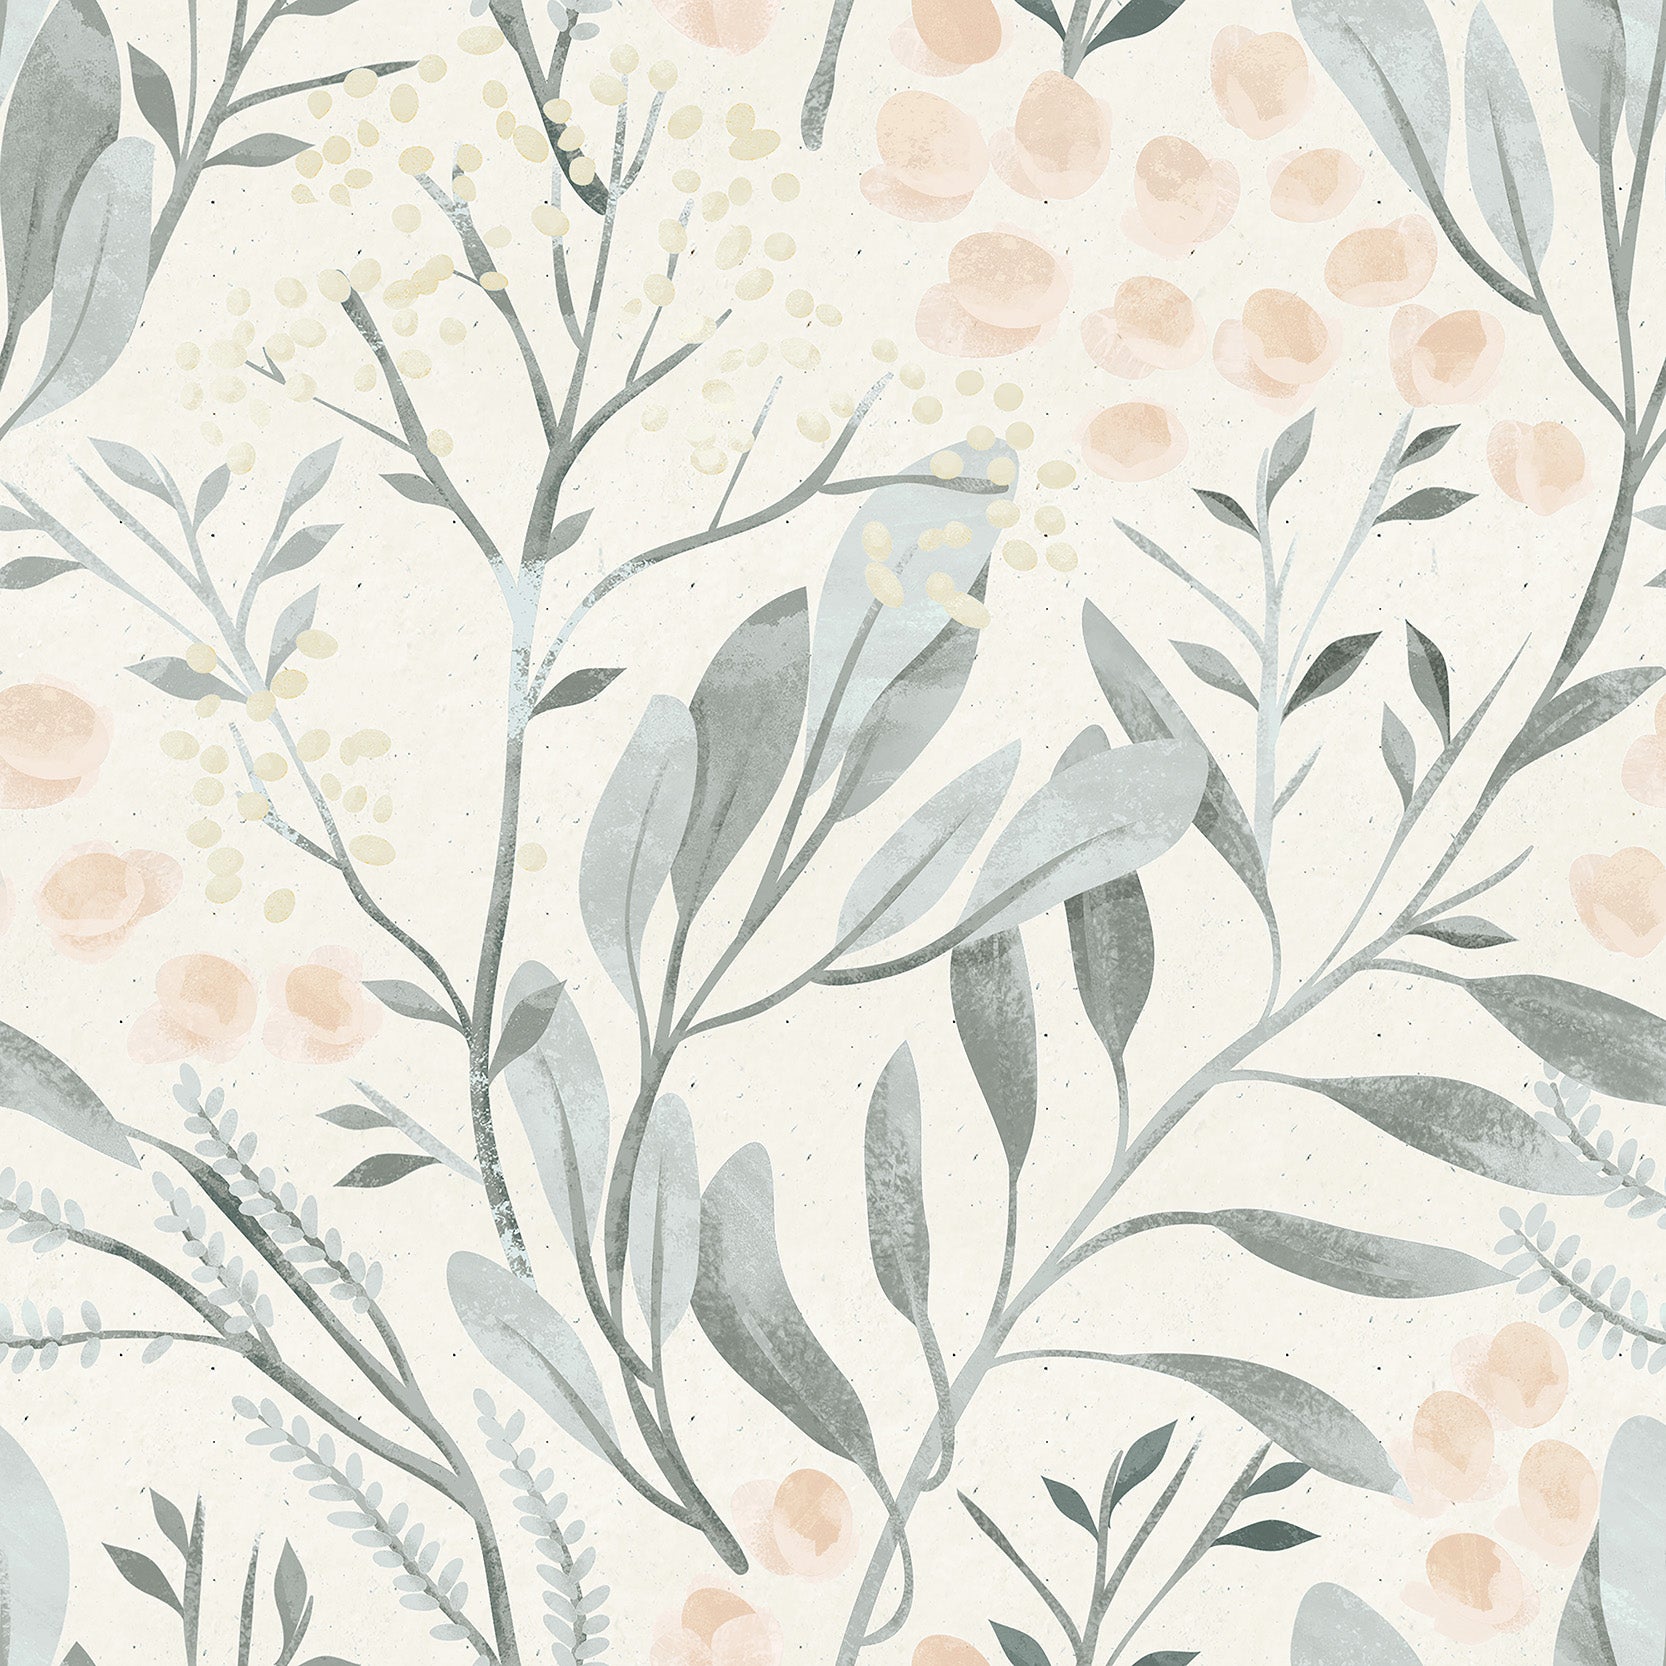 Sophie-Pastel-Tropical-Floral-Illustration-Wallpaper-Mural